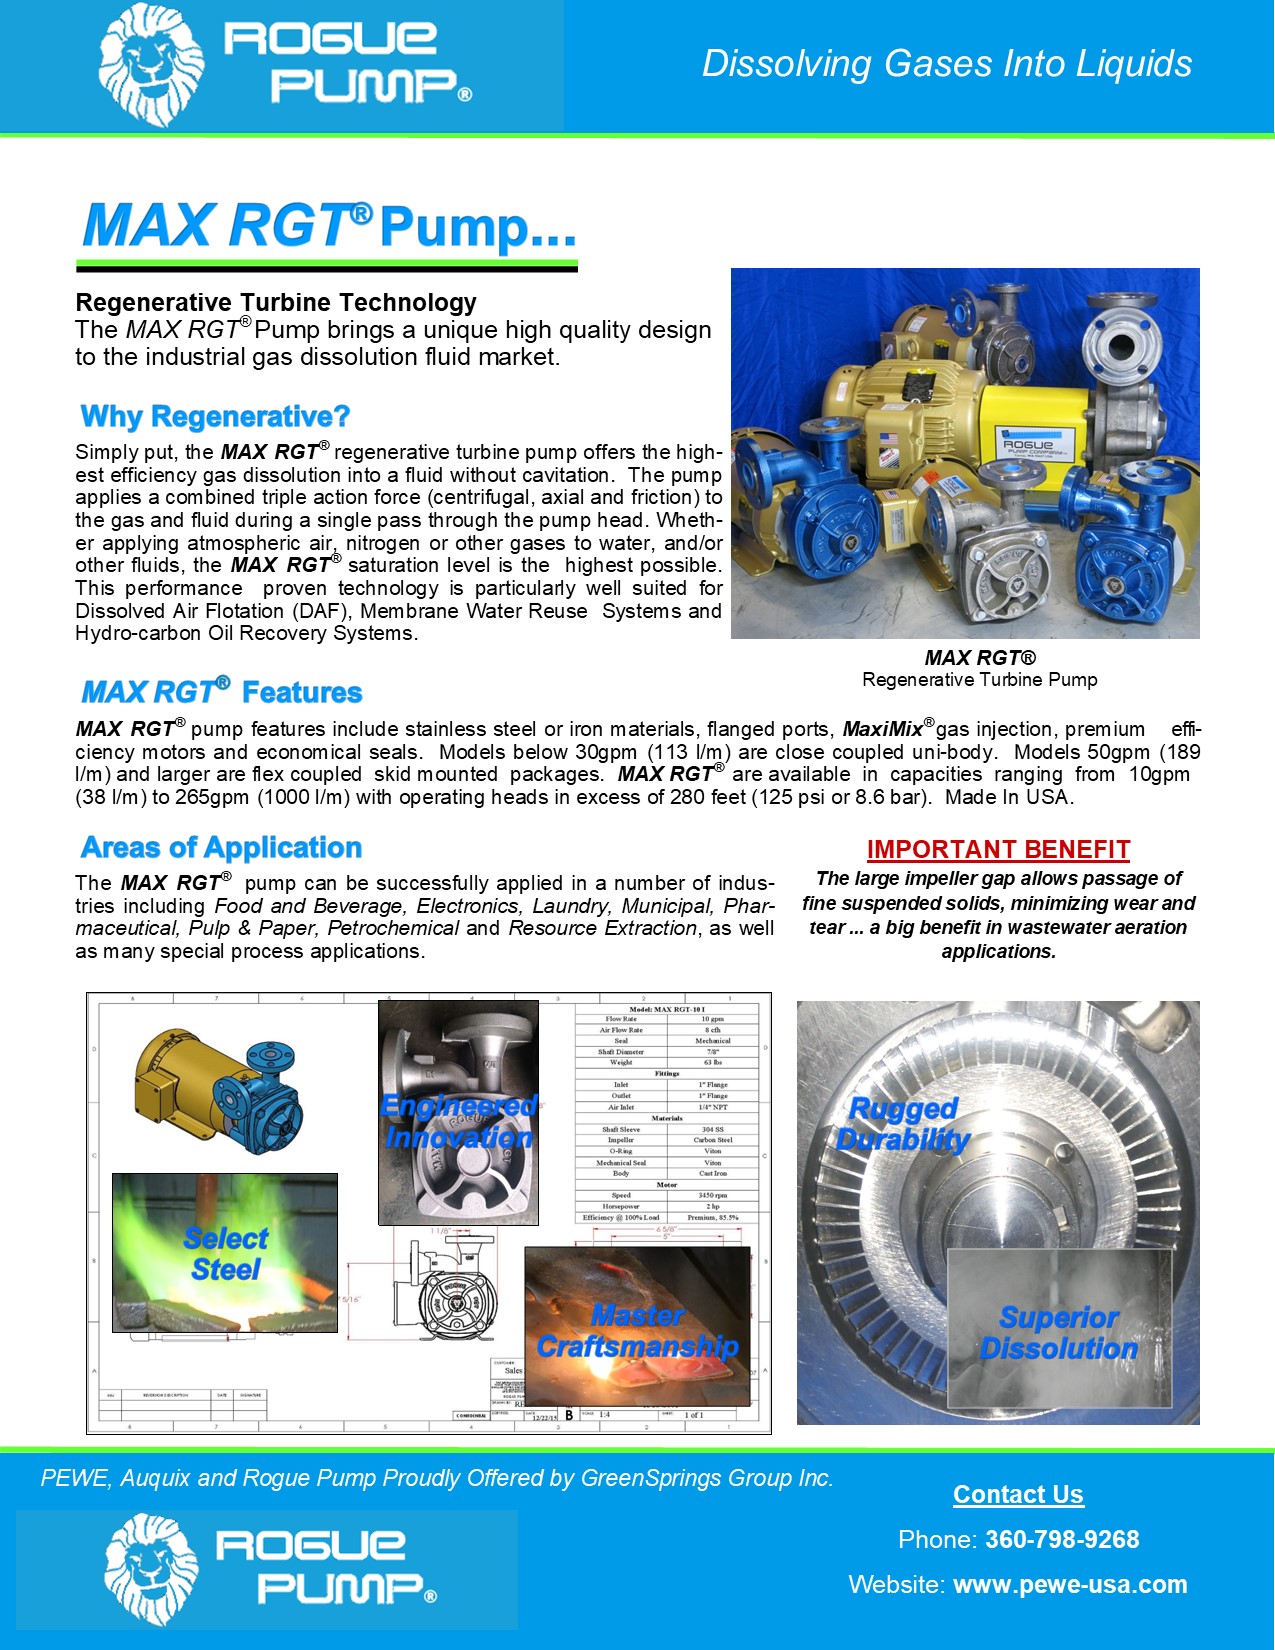 Rogue-Pump-MAX-RGT-Brochure-2021.jpg